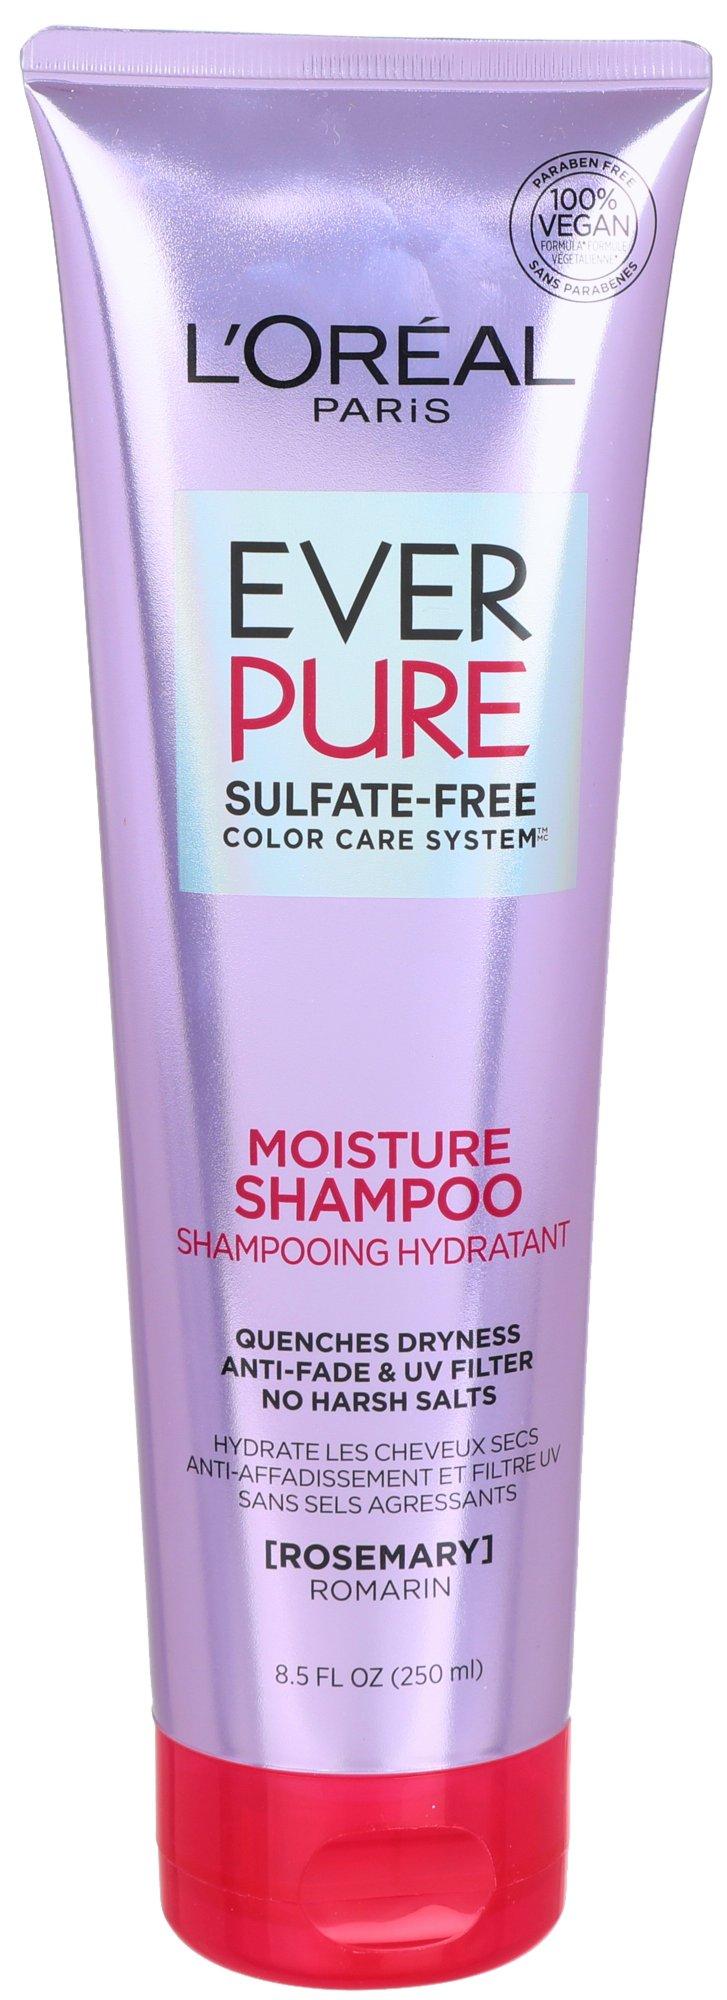 Ever Pure Rosemary Moisture Shampoo 8.5 Fl. Oz.